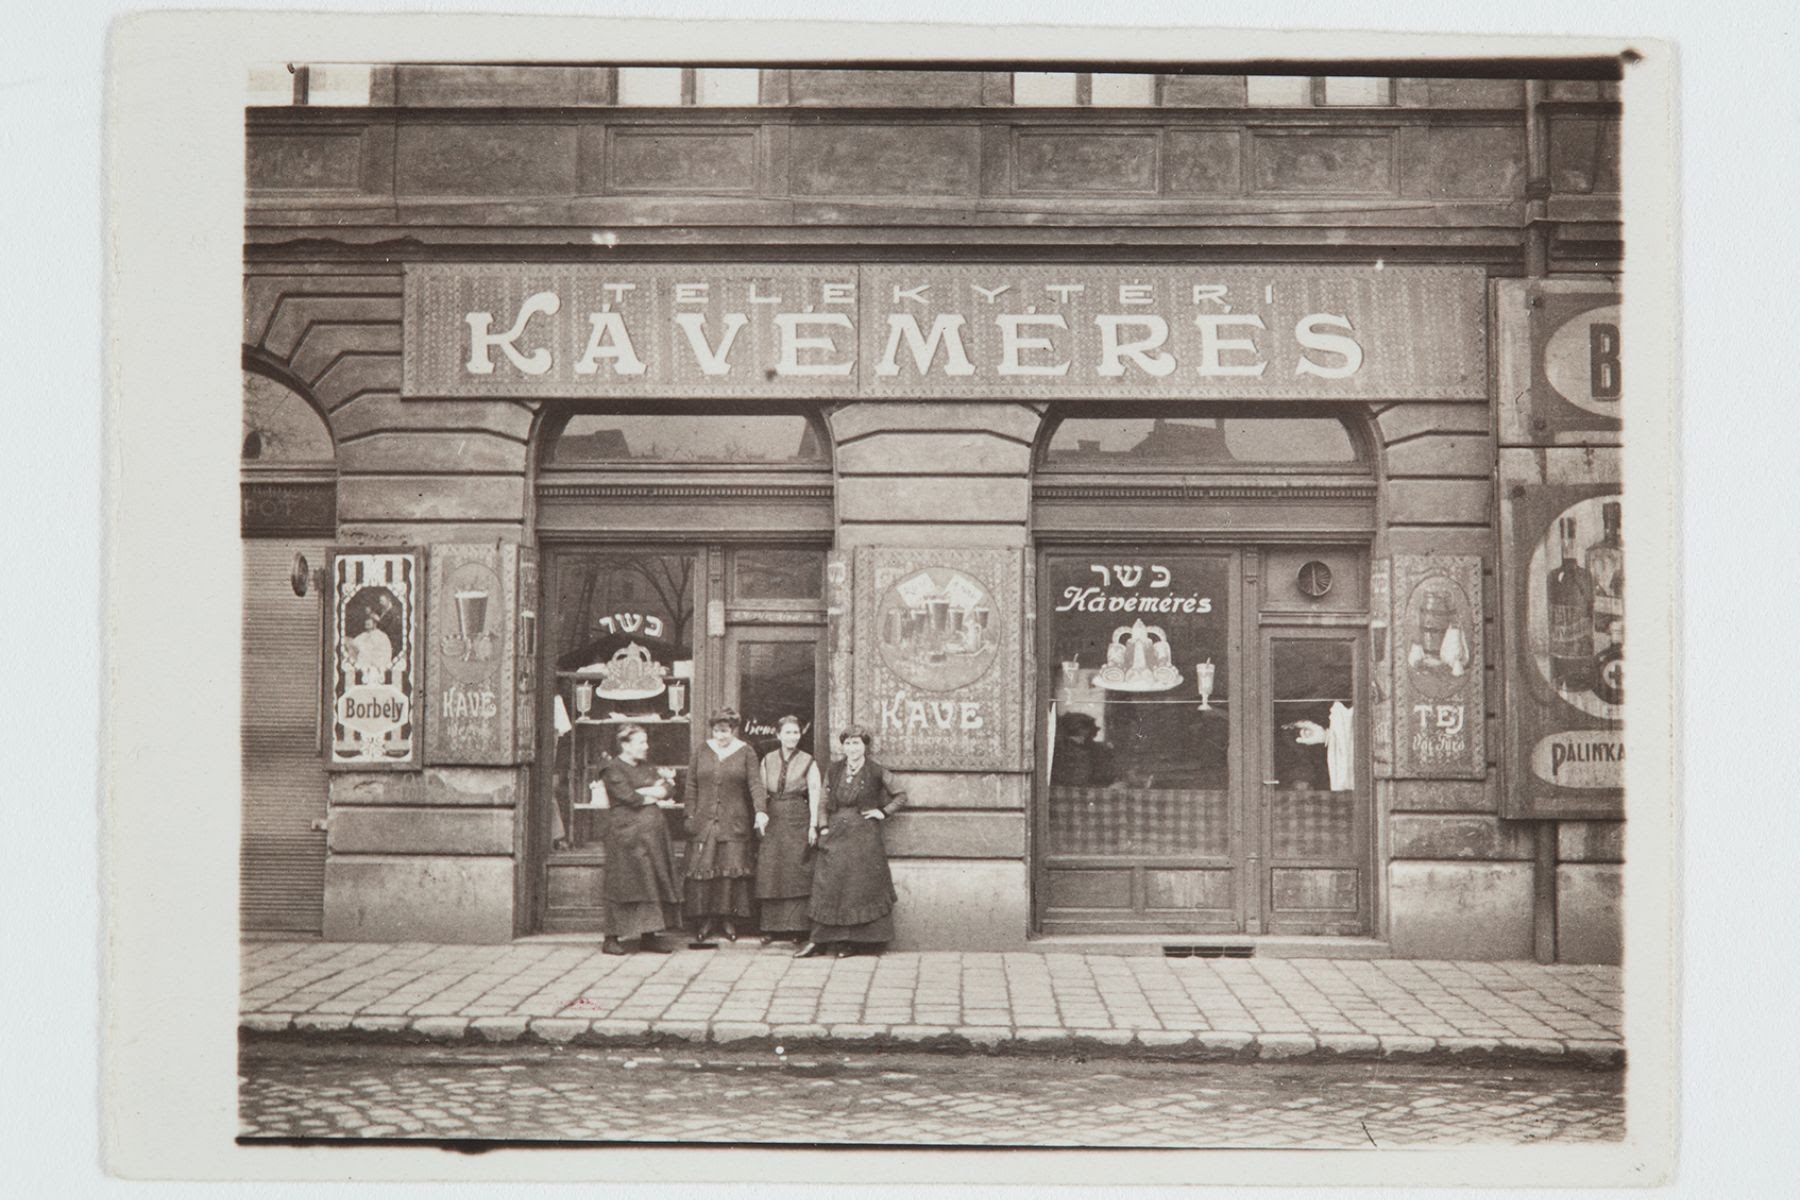 Kertész anyjának kávémérése, Budapest, Teleki tér, 1910-es évek. (A csoport bal oldalán Kertész édesanyja.) © Estate of André Kertész, Magyar Nemzeti